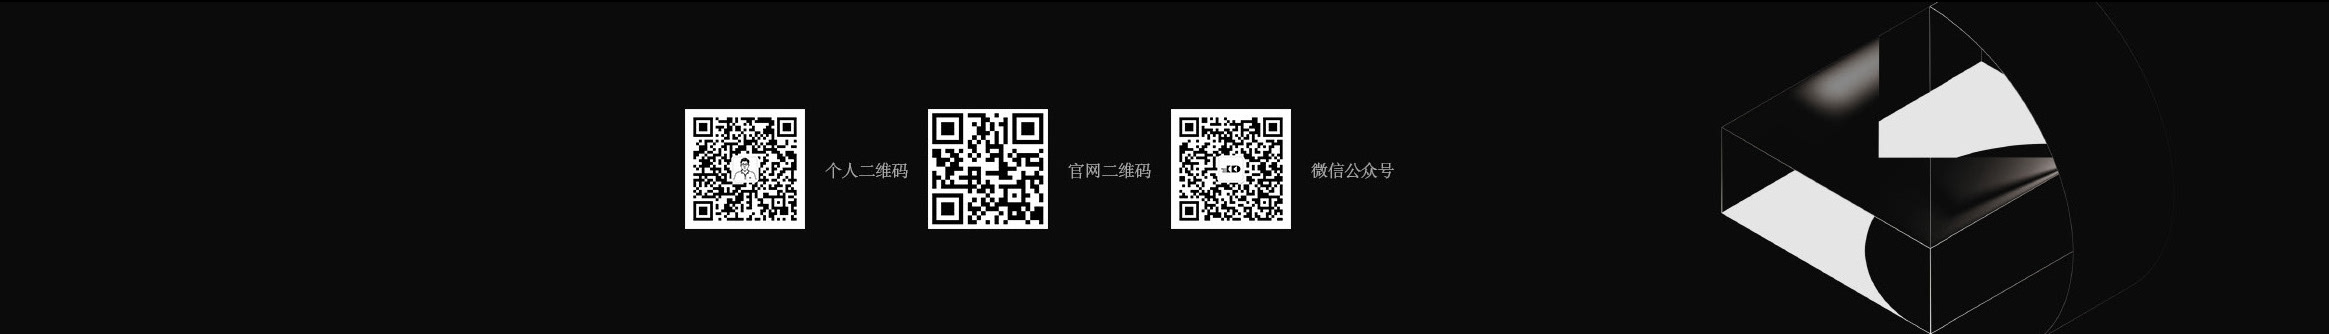 郑 文锋's profile banner